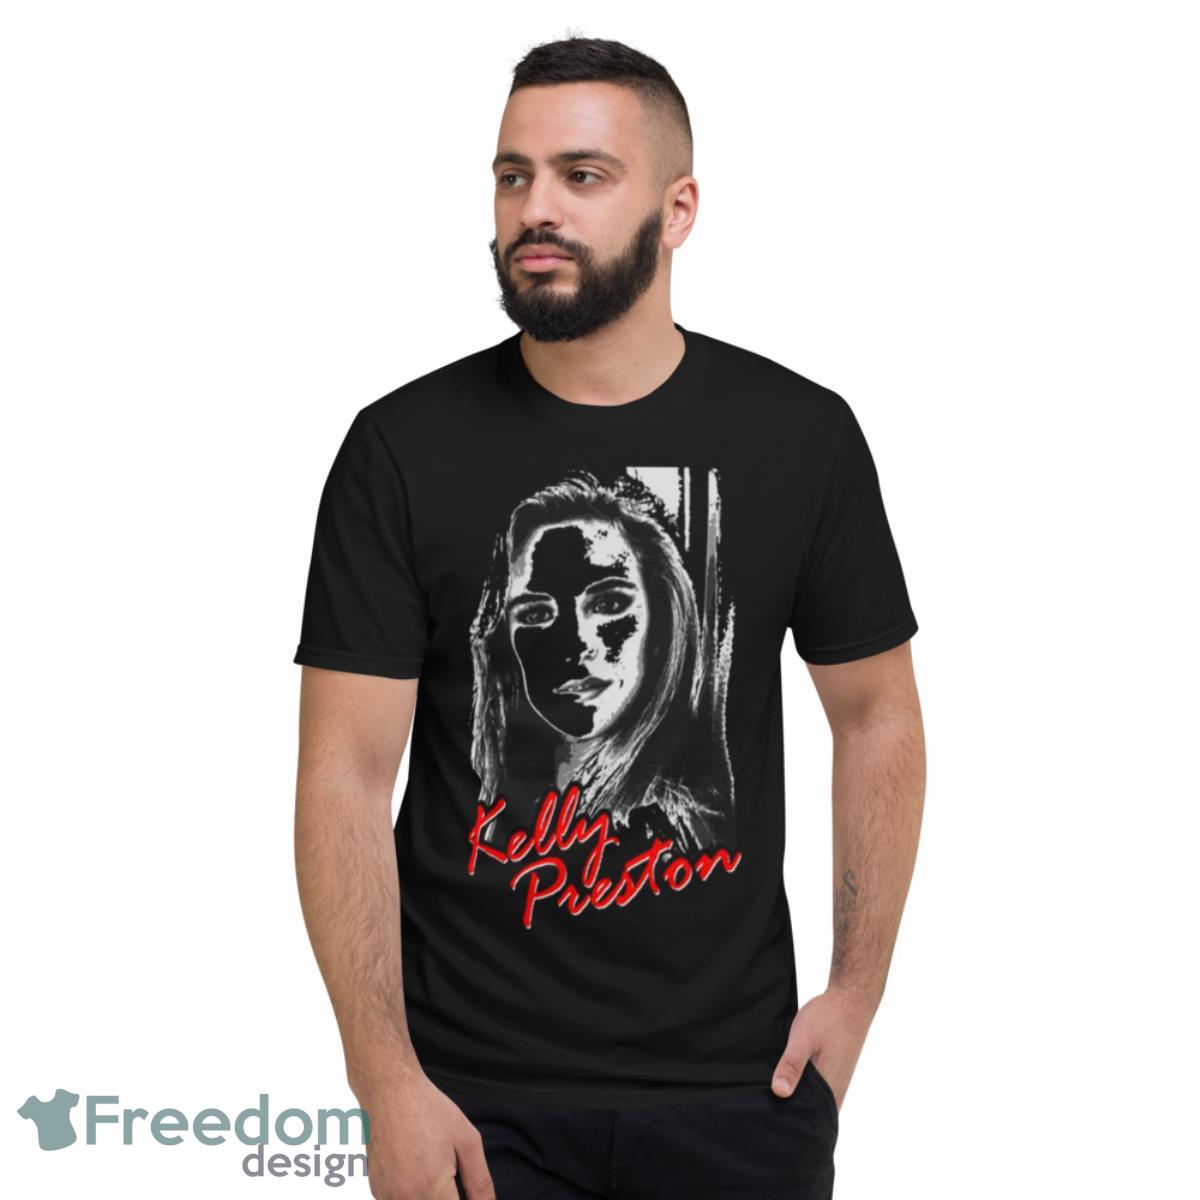 Actress Kelly Preston Art Shirt